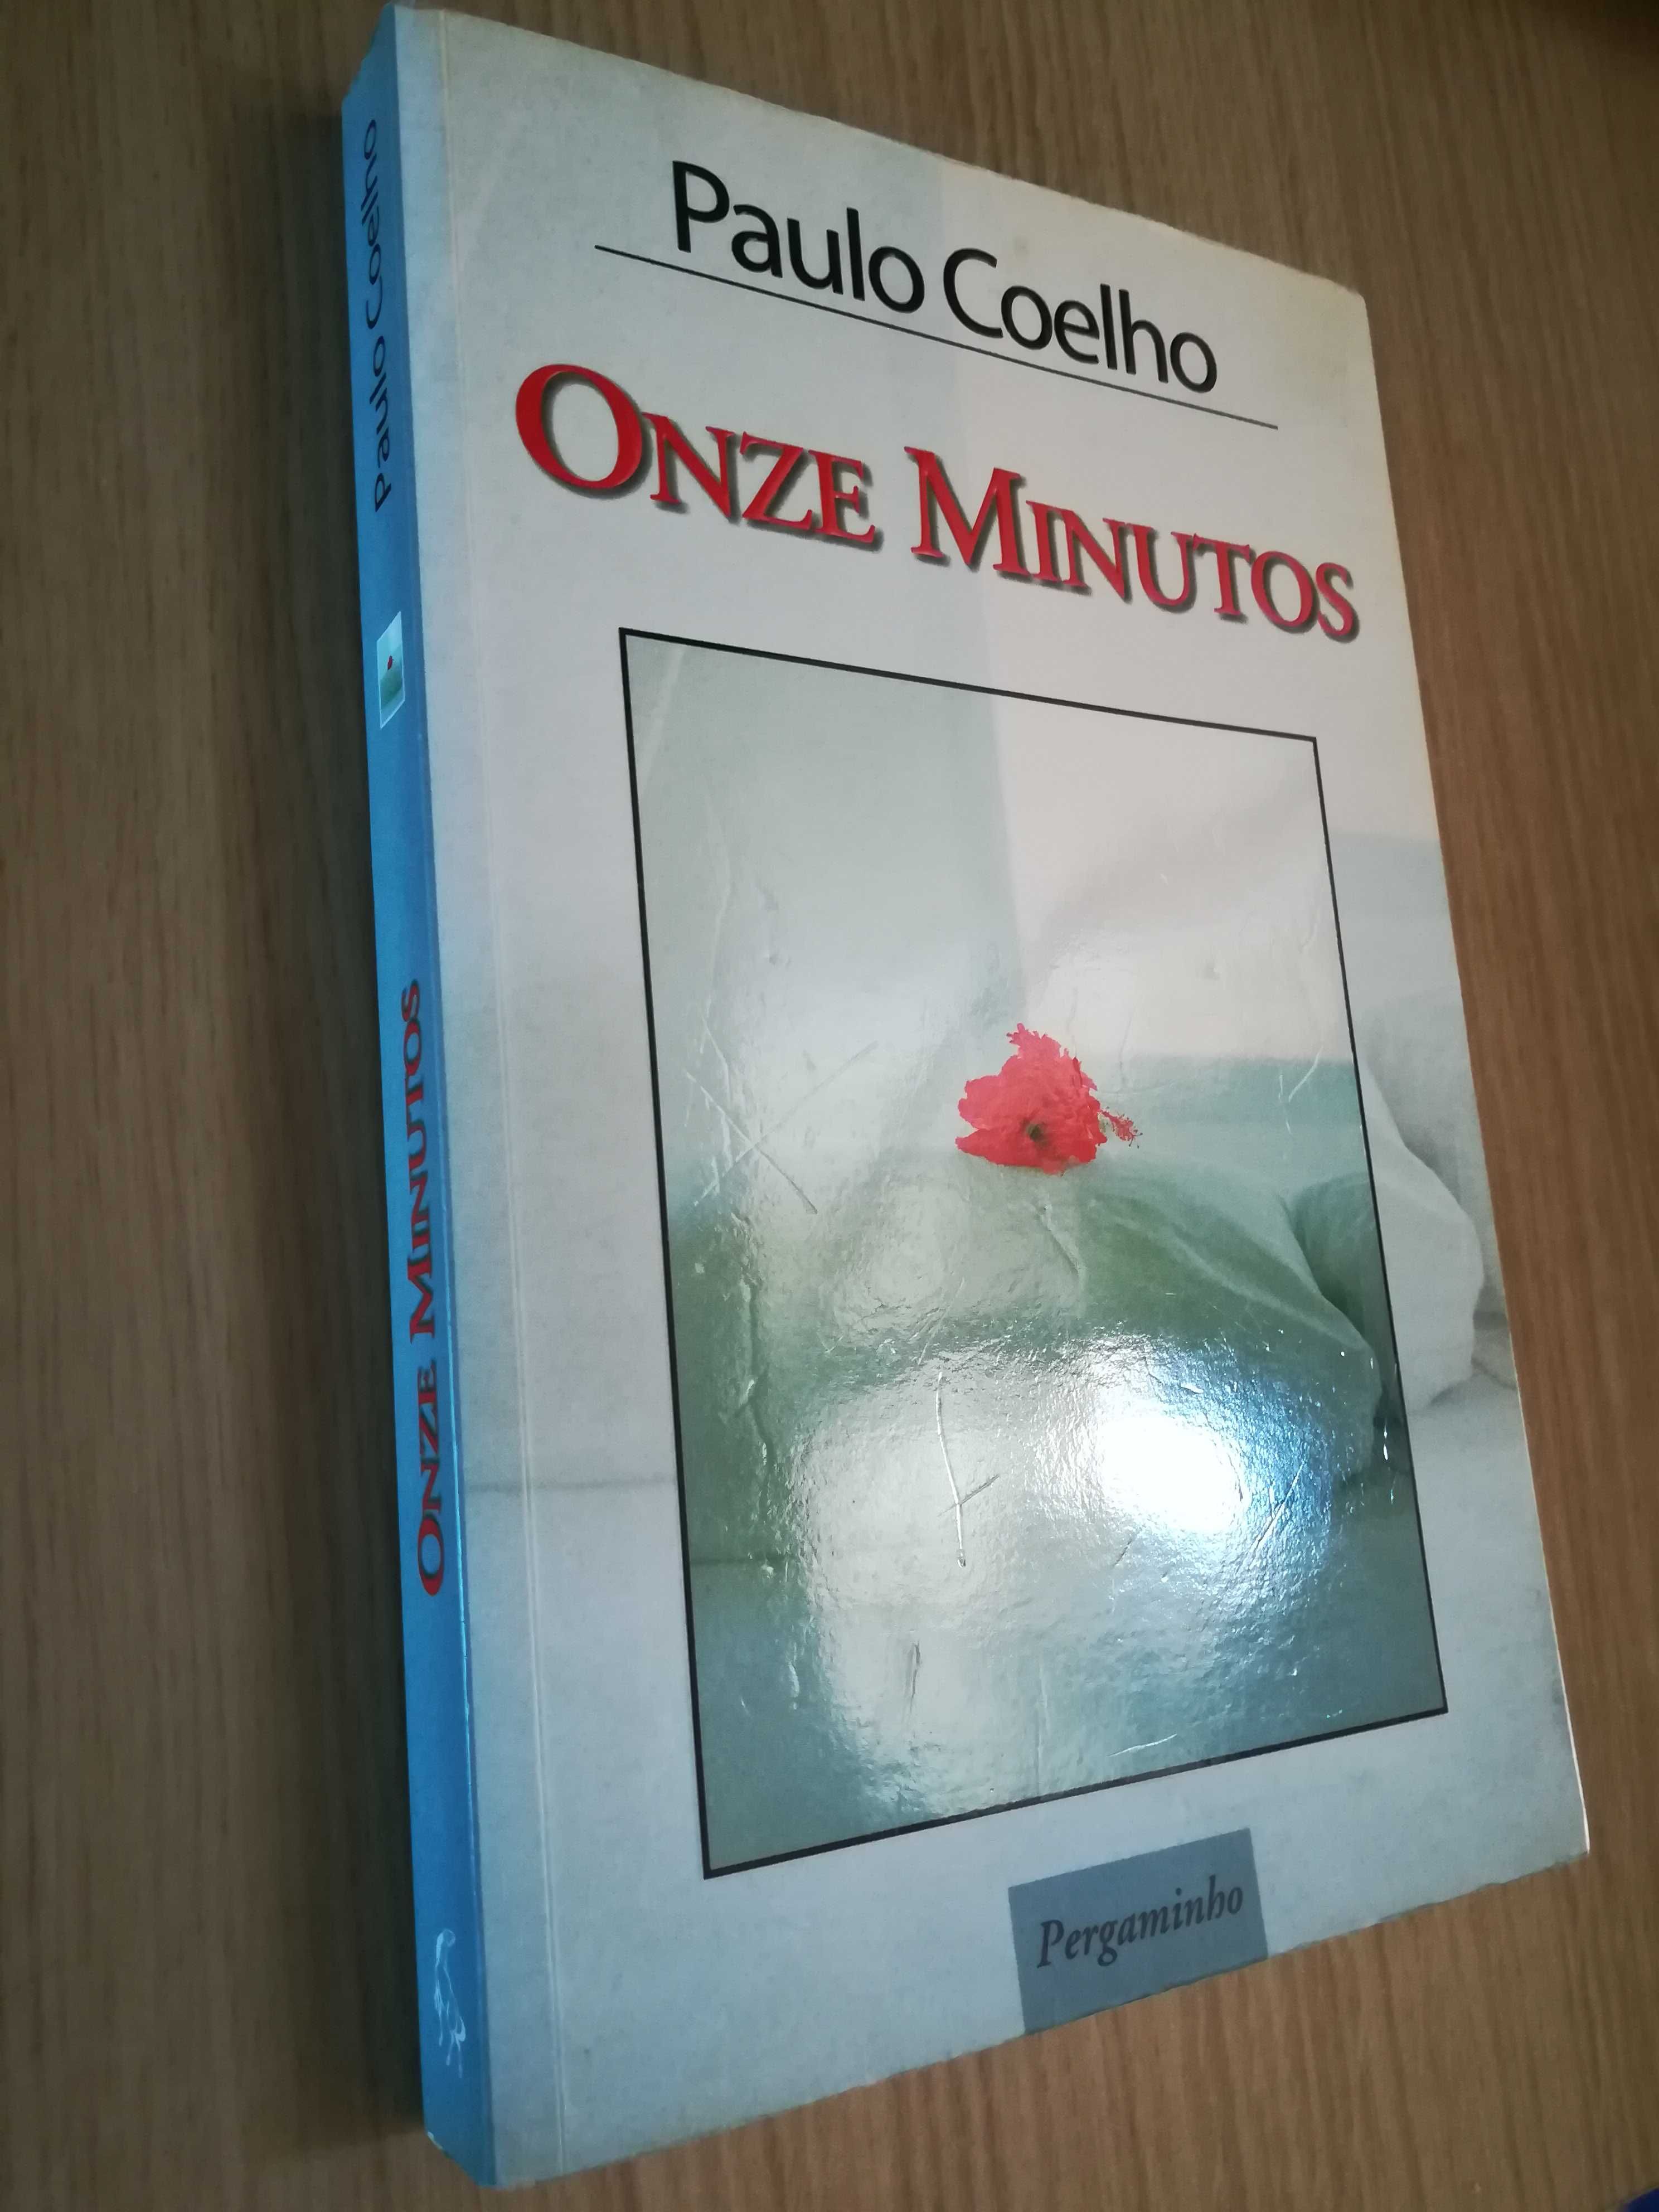 PAULO COELHO ~ ONZE MINUTOS - Edições Pergaminho~ 12,50€ Oferta Portes